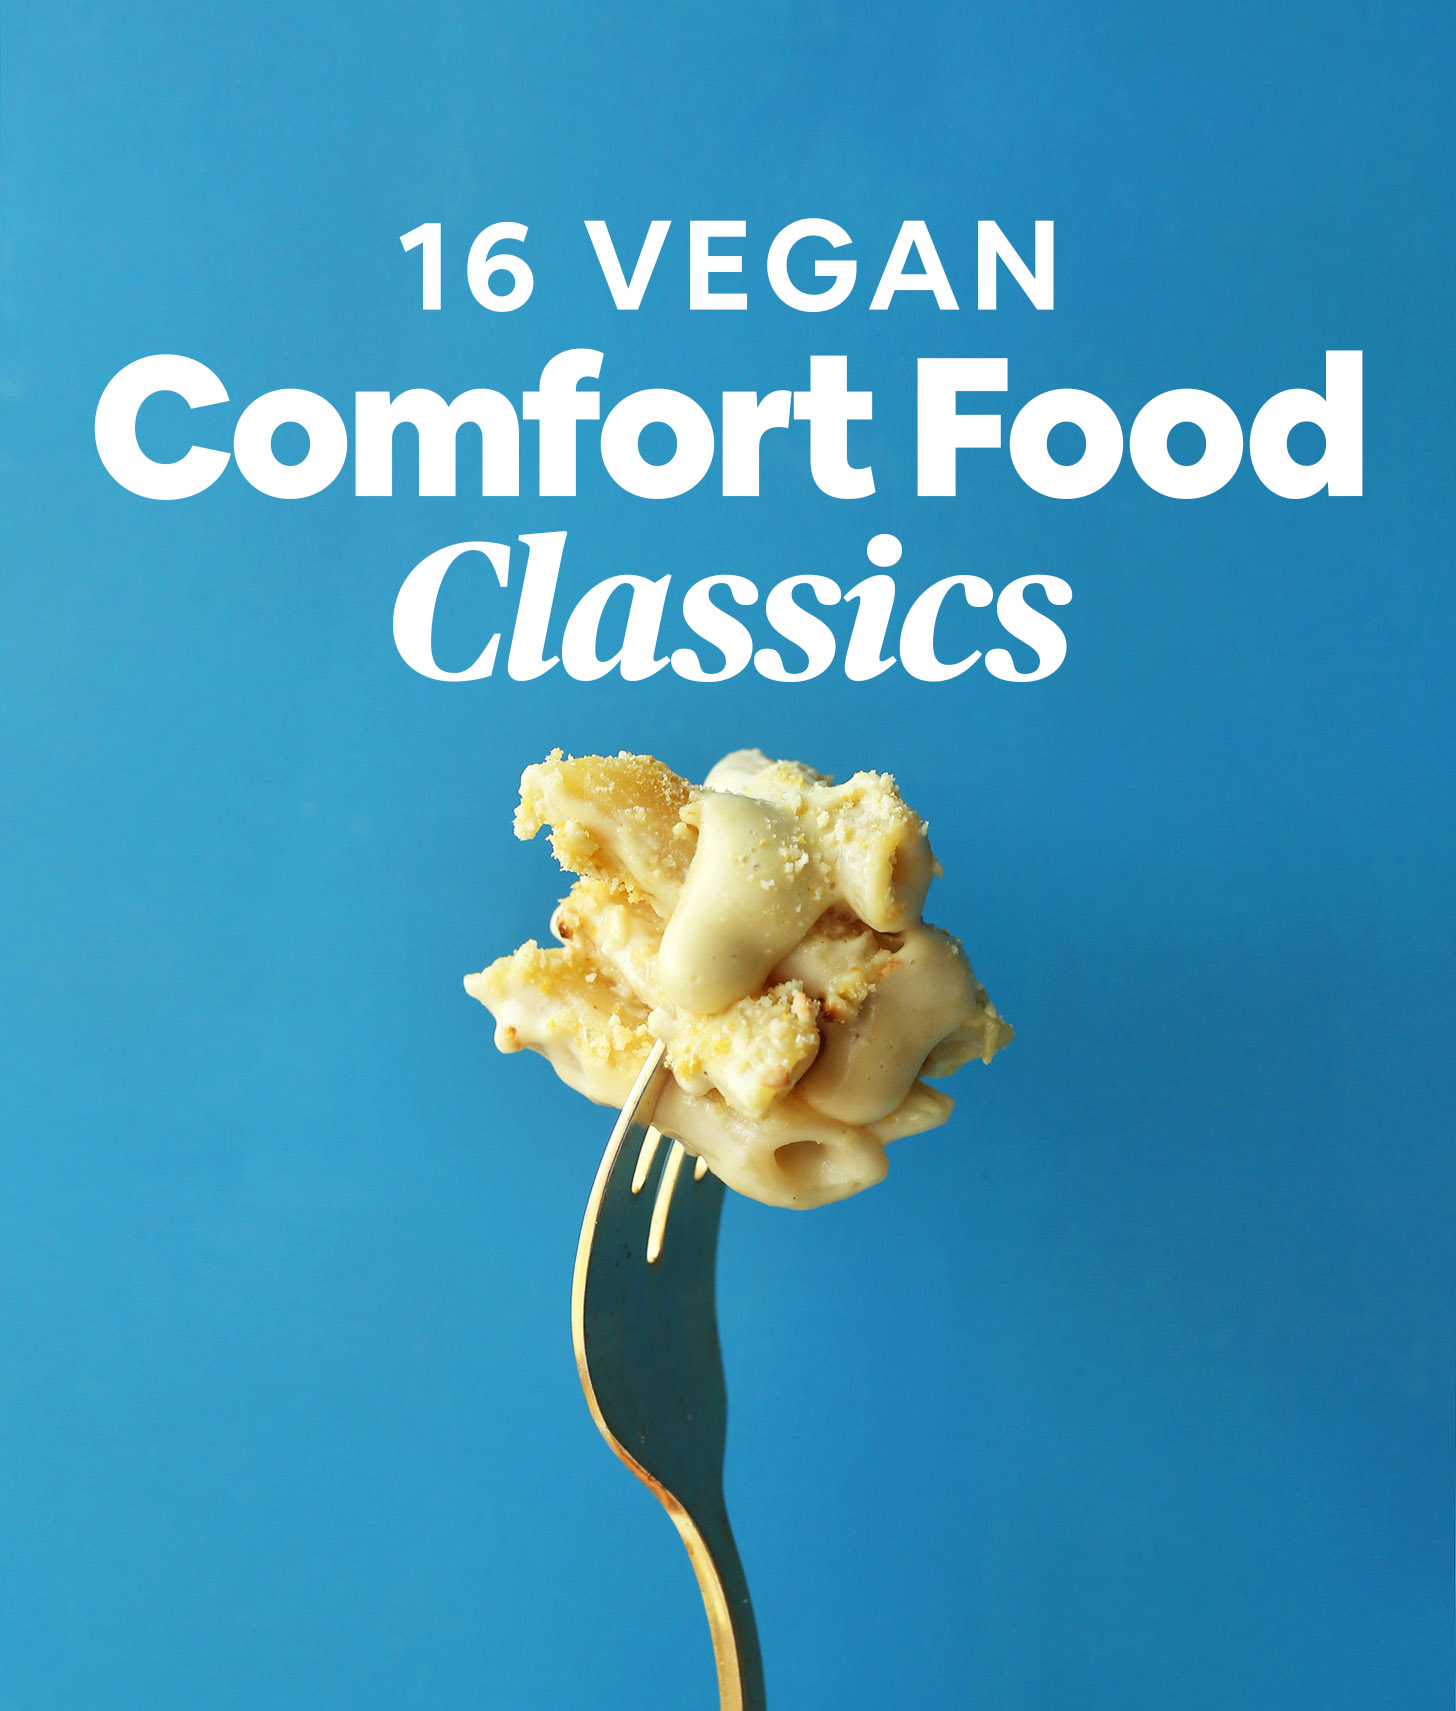 16 Vegan Comfort Food Classics